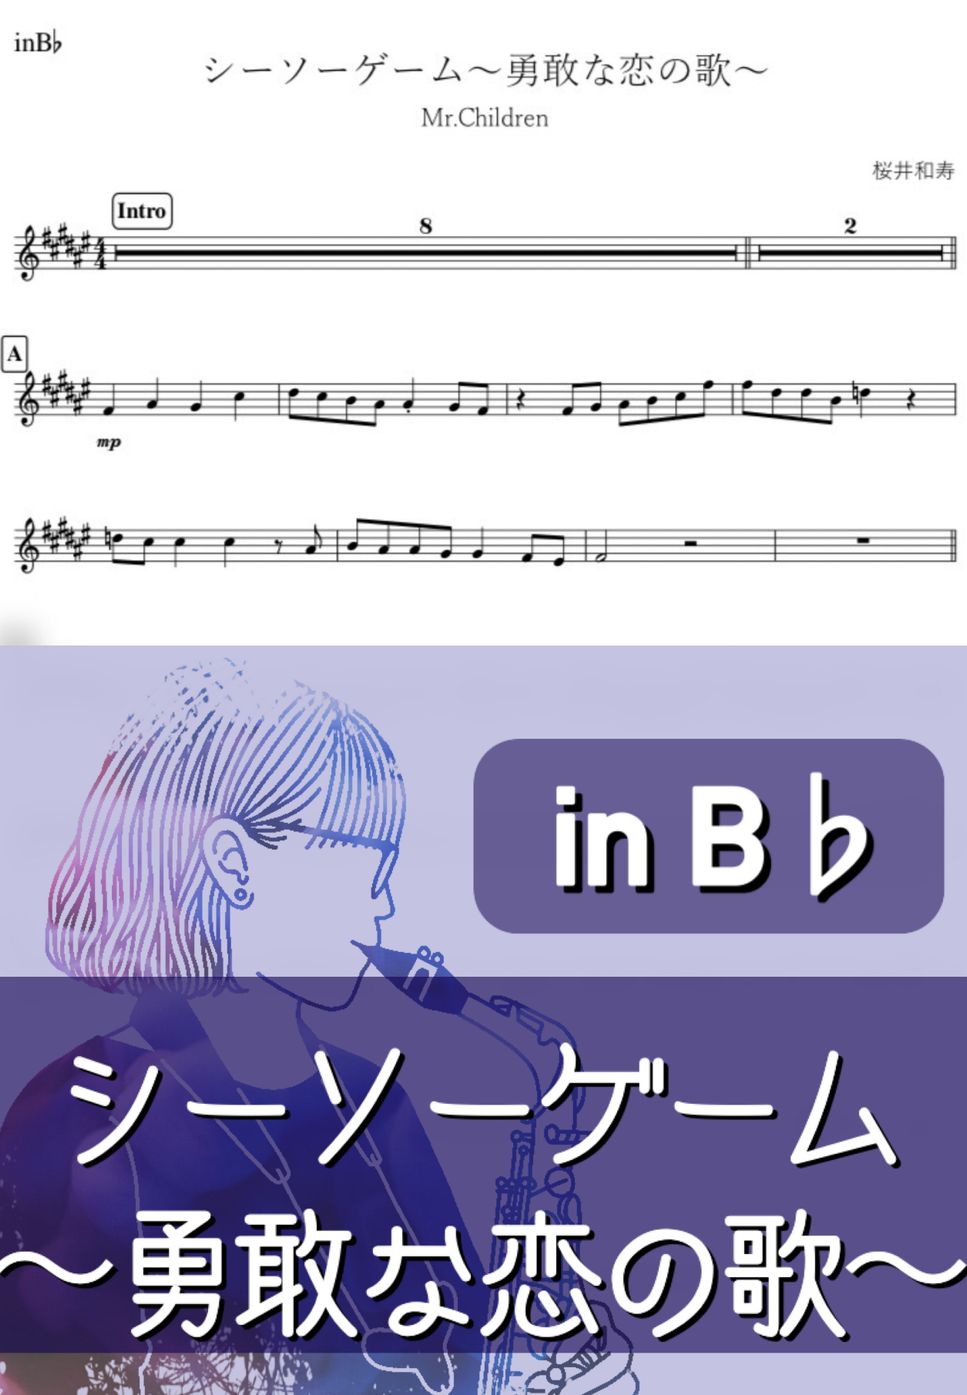 Mr.Children - シーソーゲーム (B♭) by kanamusic